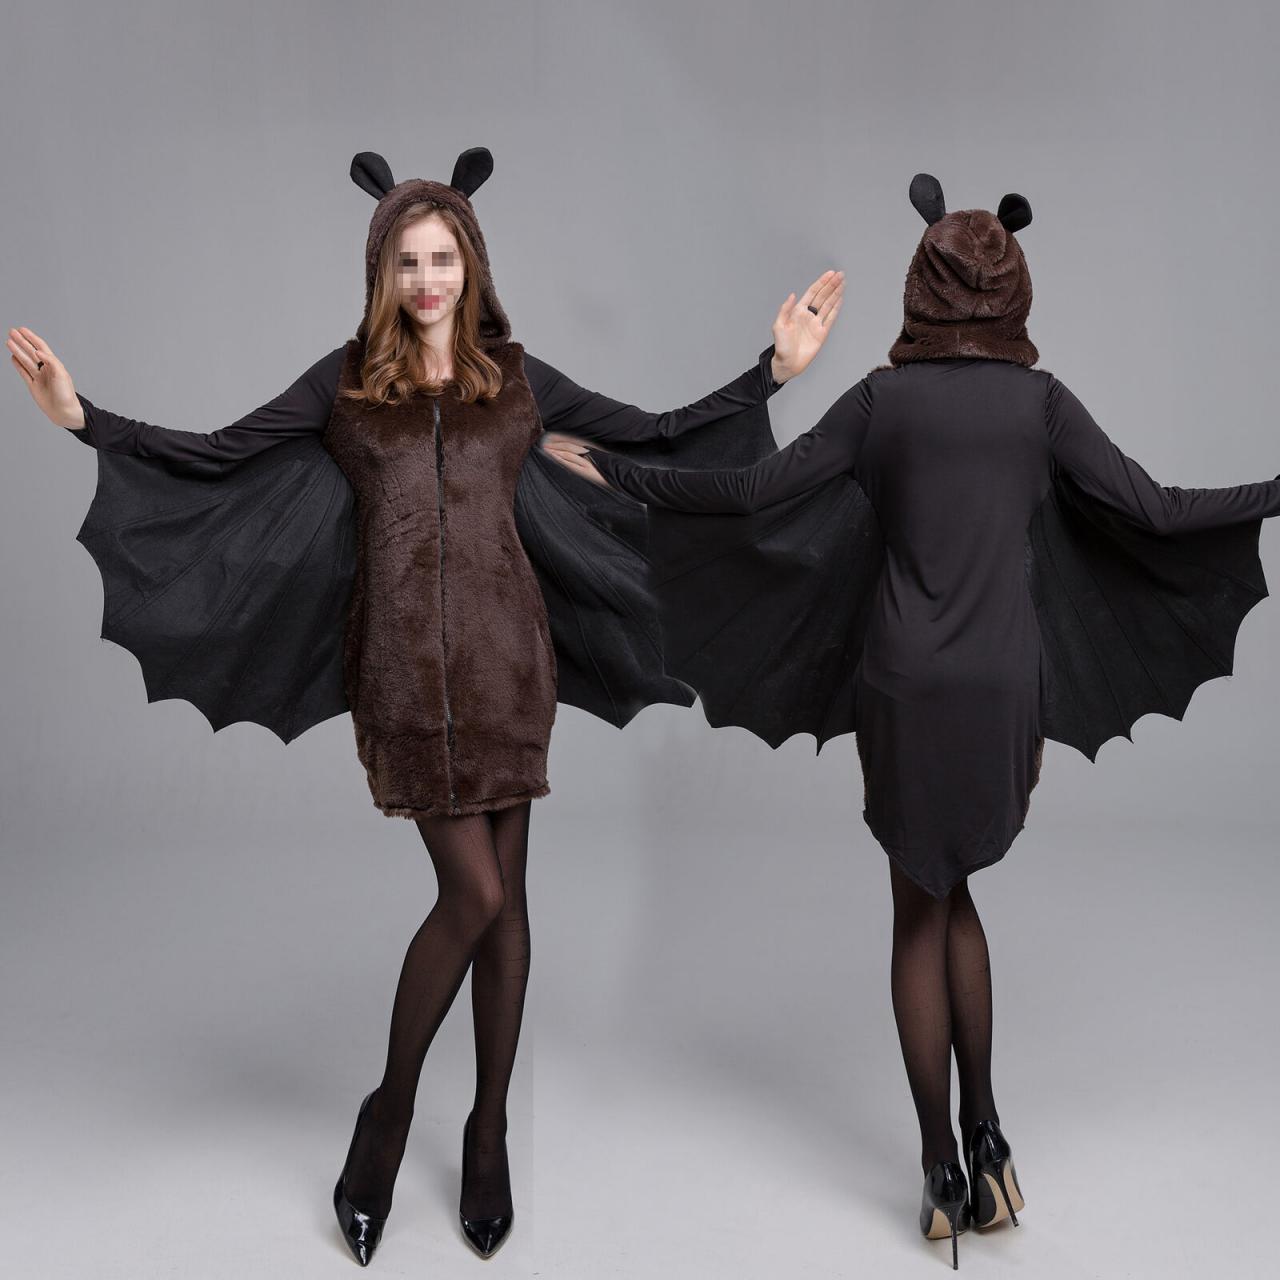 Attractive Women Halloween Cosplay Bat Wing Costume Vampire Party Hooded Fancy Dress